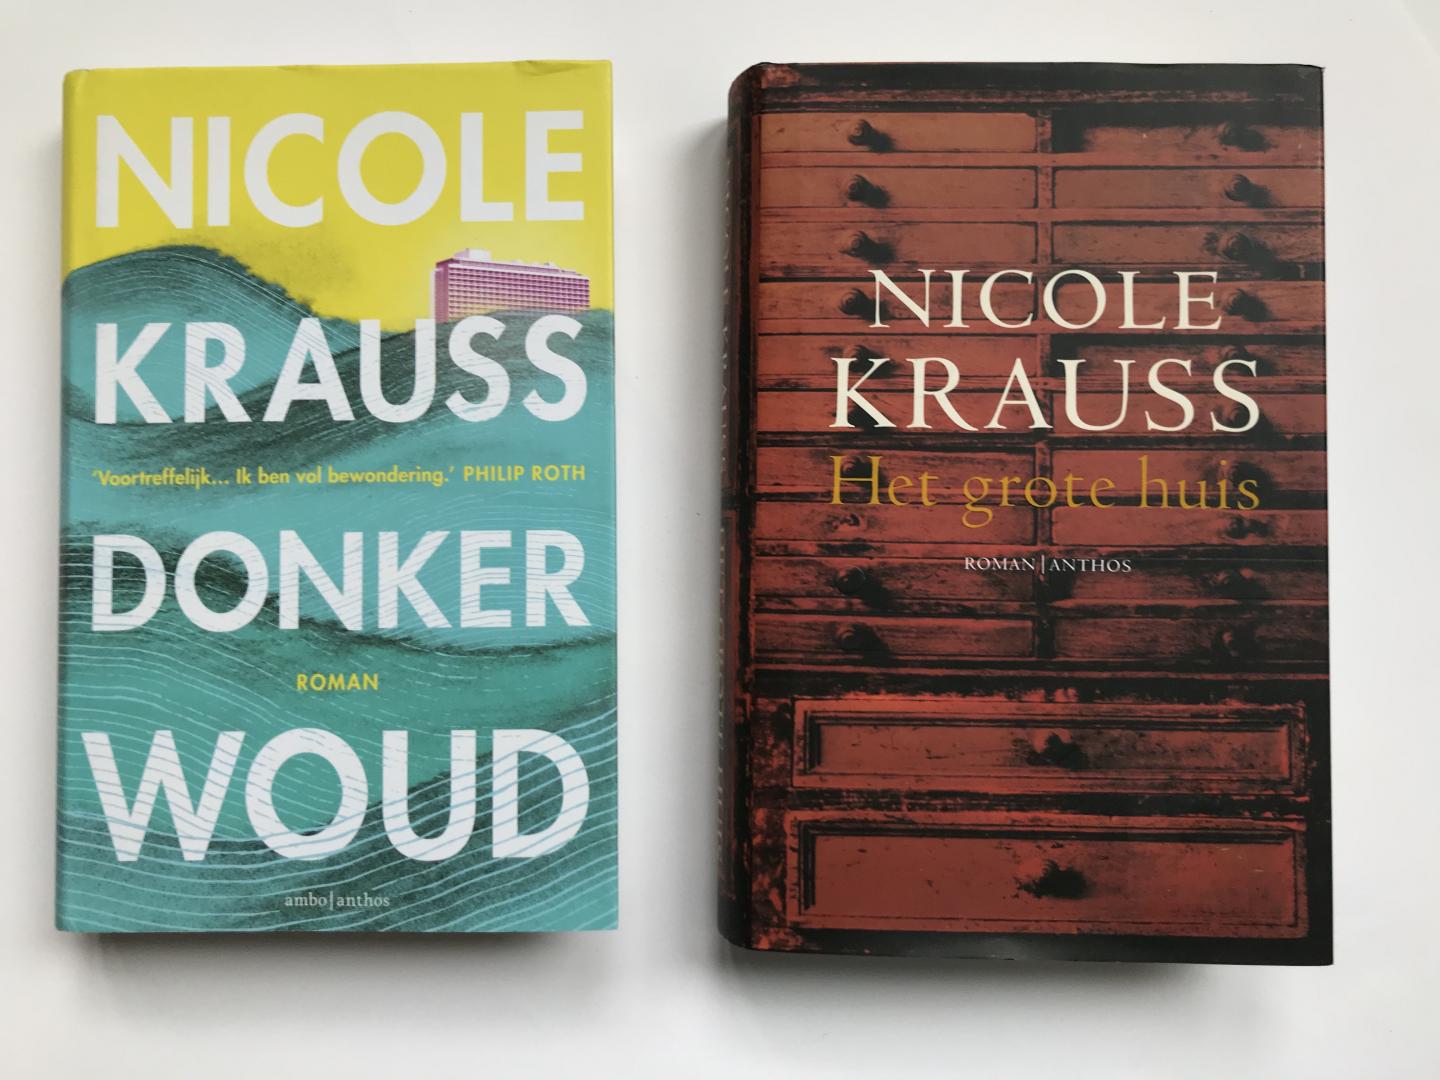 Krauss, Nicole - 2 titels: Donker Woud & Het grote huis